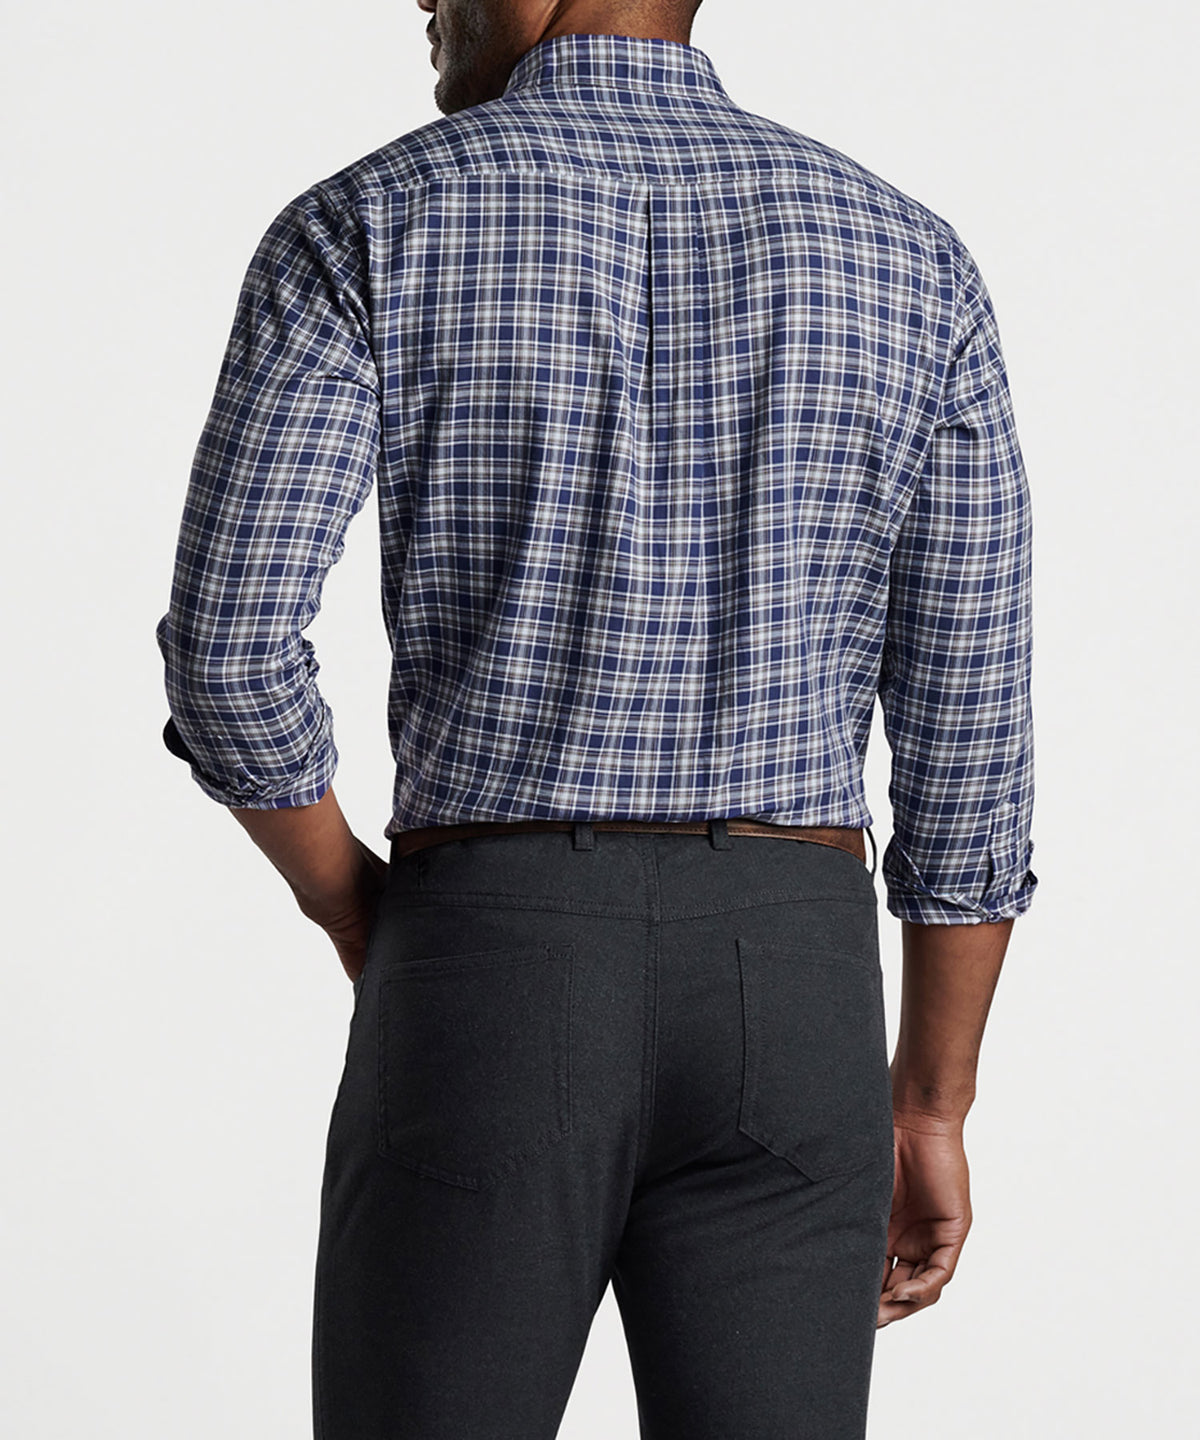 Peter Millar Long Sleeve Haight Sport Shirt, Men's Big & Tall